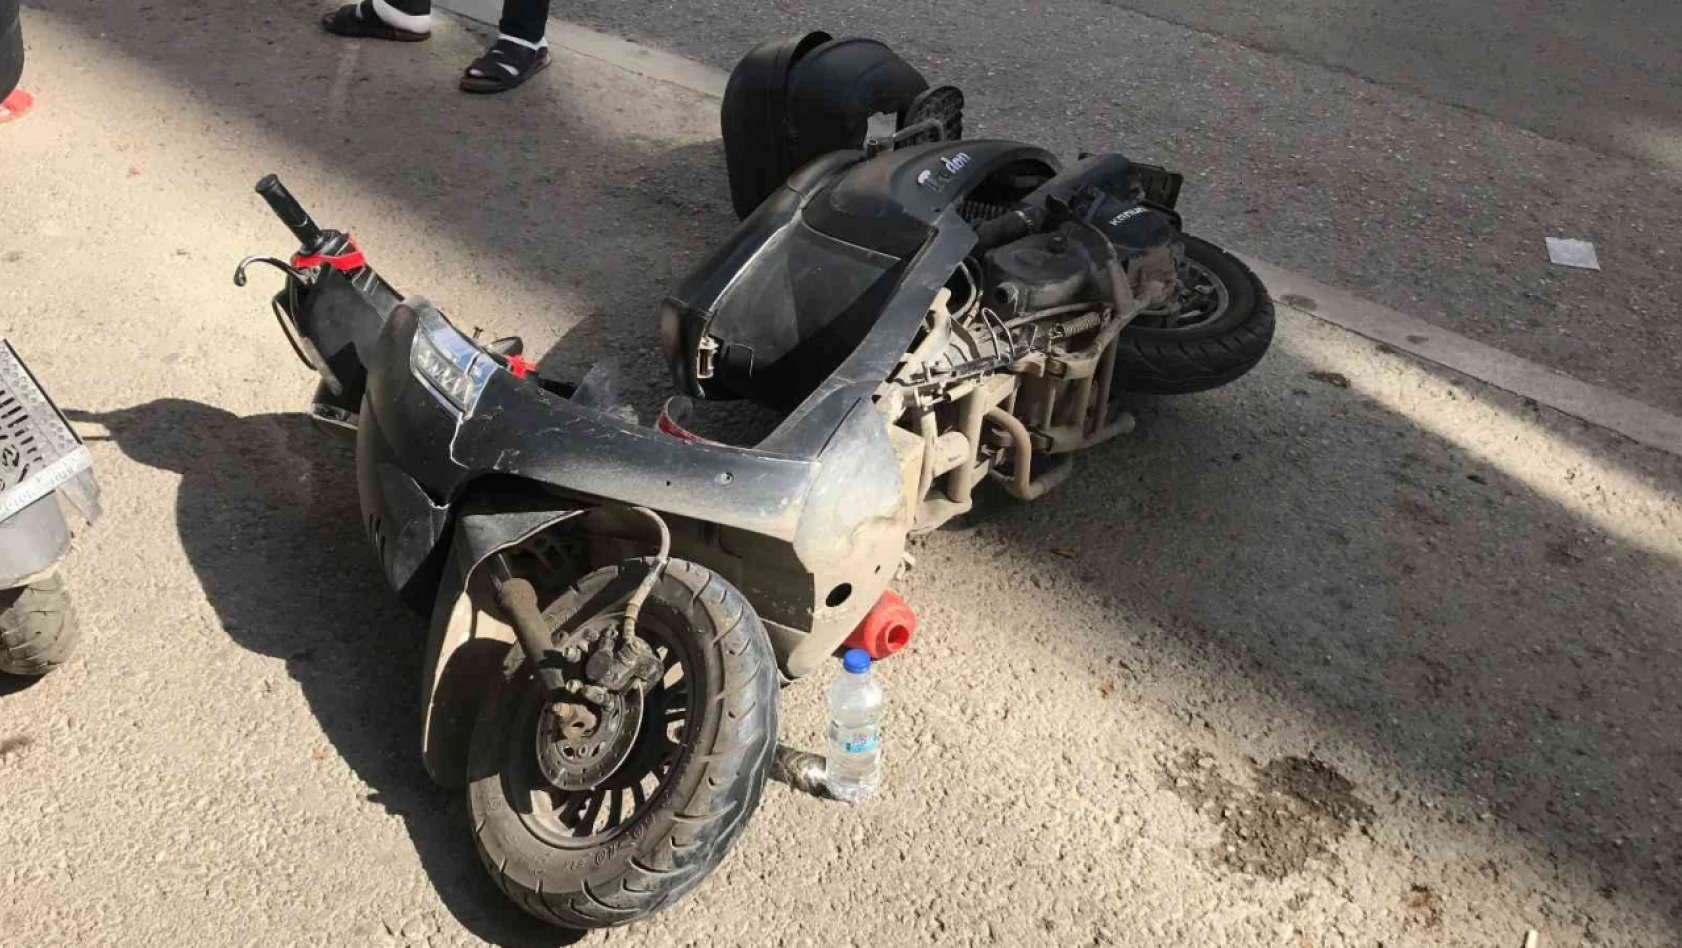 Elazığ'da motosiklet otomobille çarpıştı: 1 yaralı